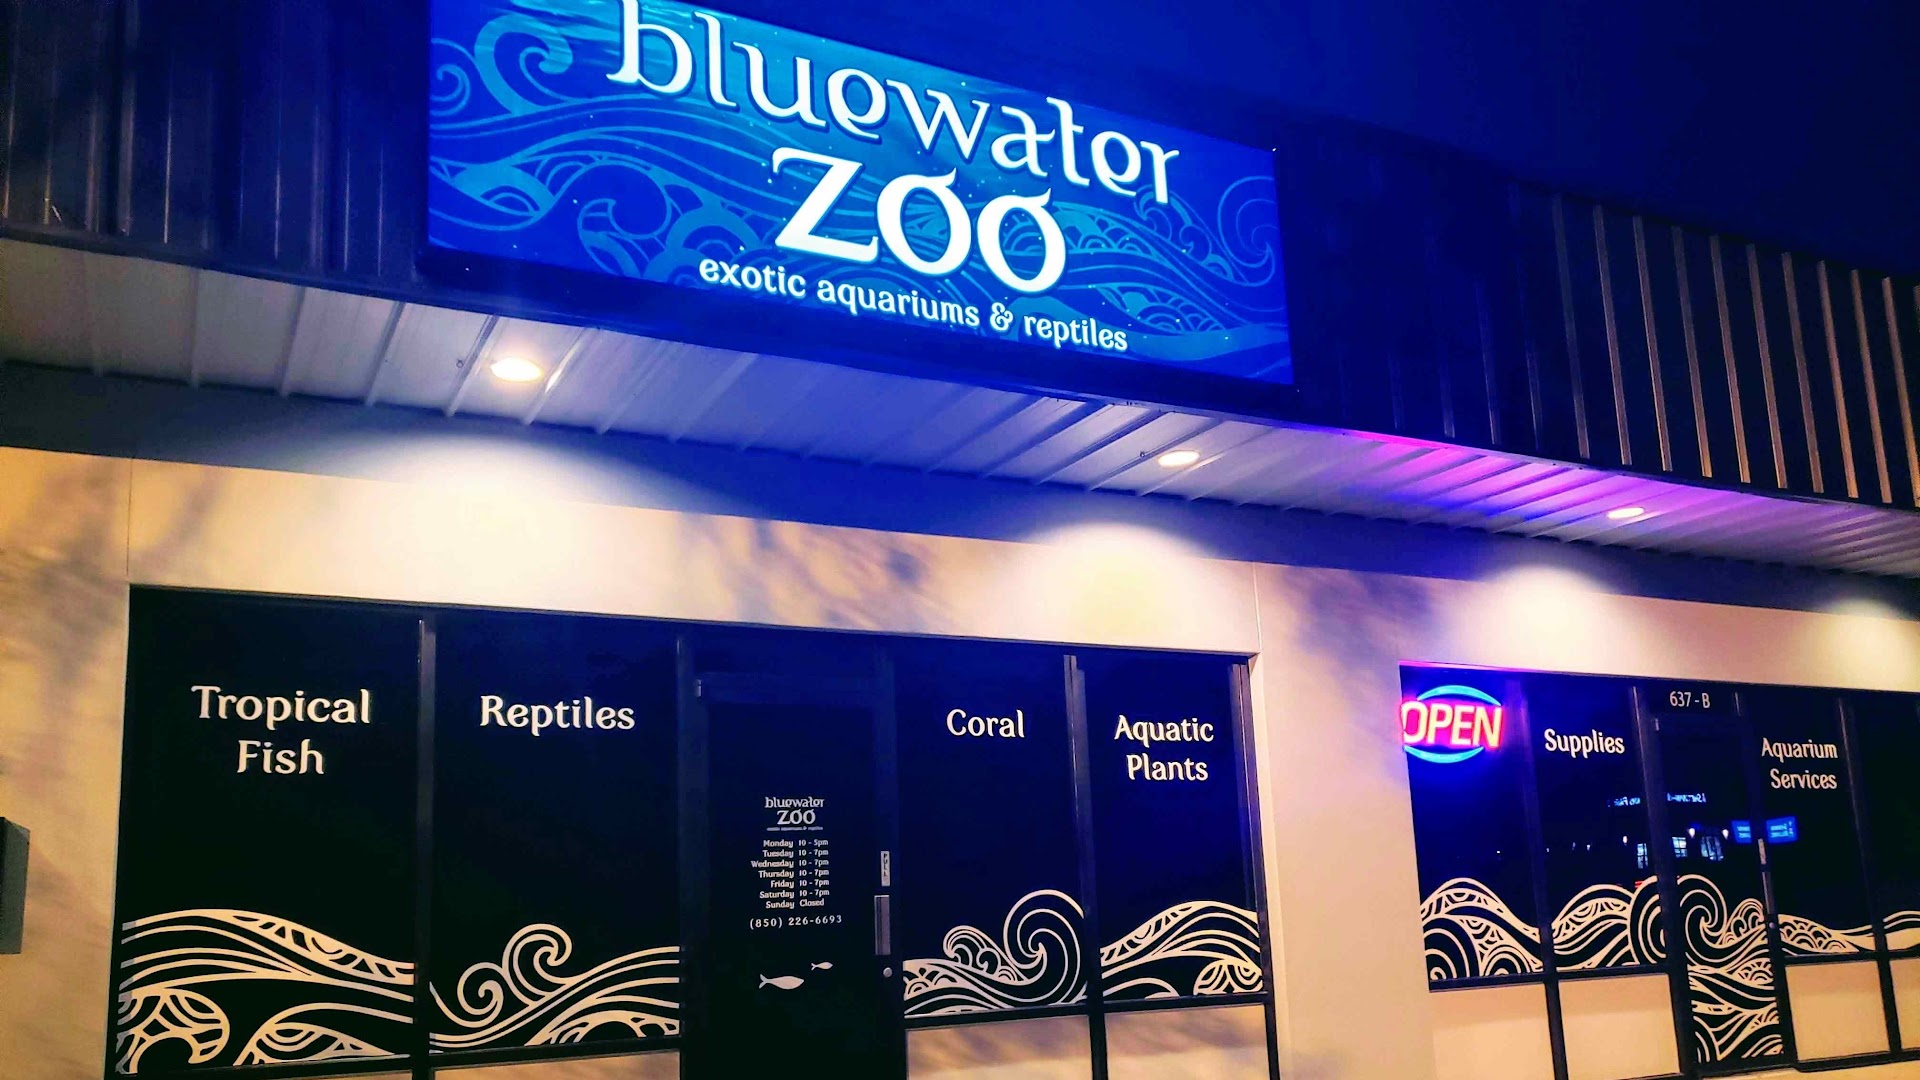 Bluewater Zoo Exotic Aquariums & Reptiles